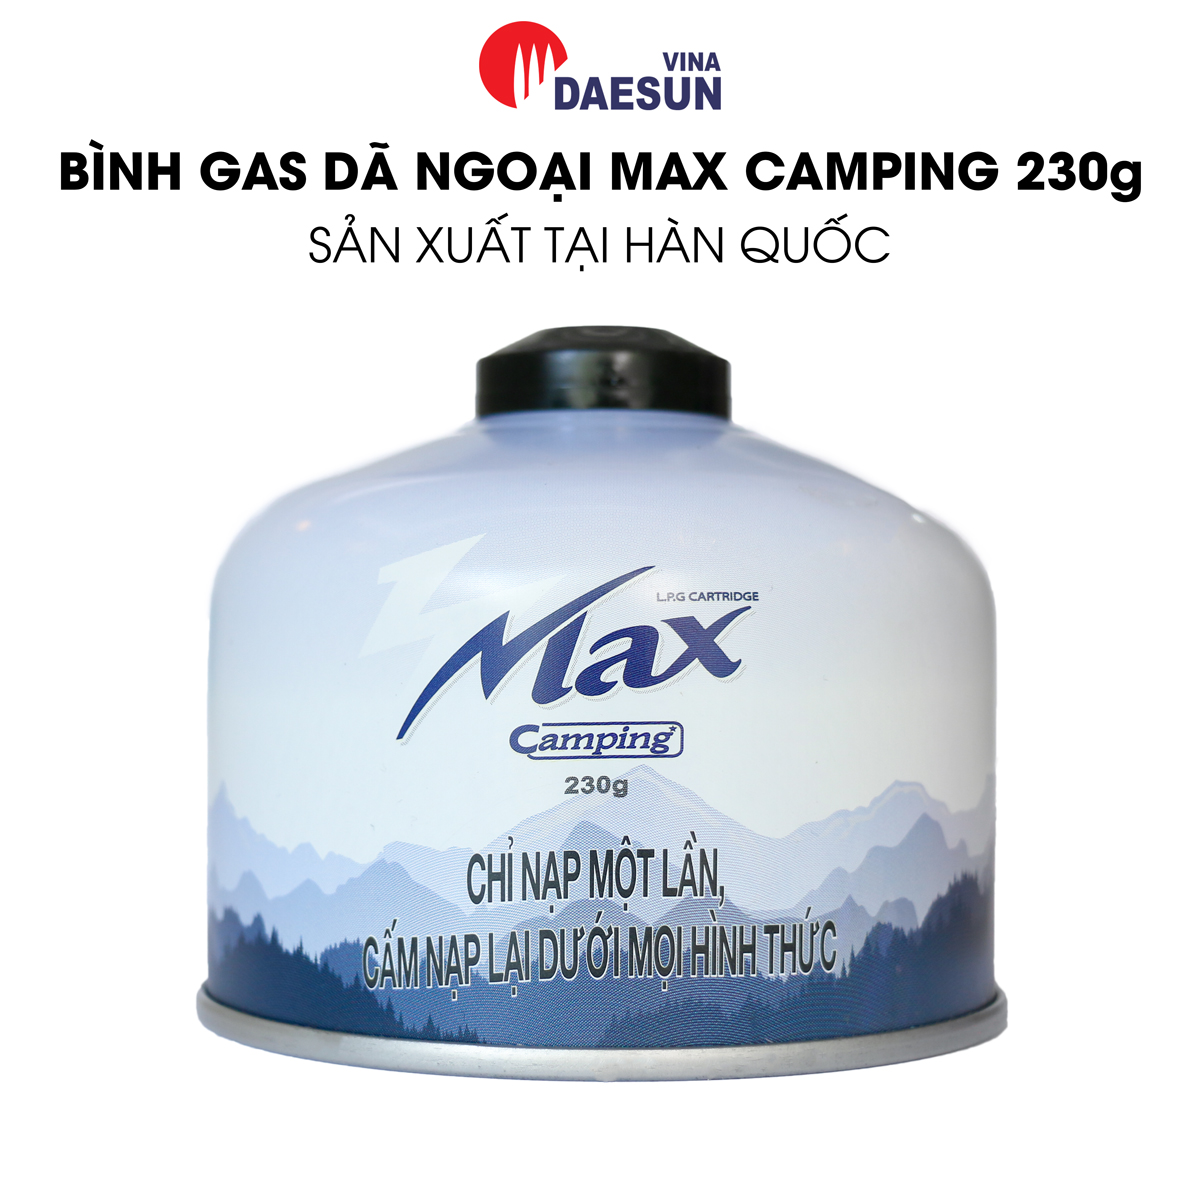 Bình Ga Dã Ngoại Max Camping 230g - Nhập Khẩu Hàn Quốc | Phù Hợp Đi Du Lịch, Dã Ngoại, Cắm Trại